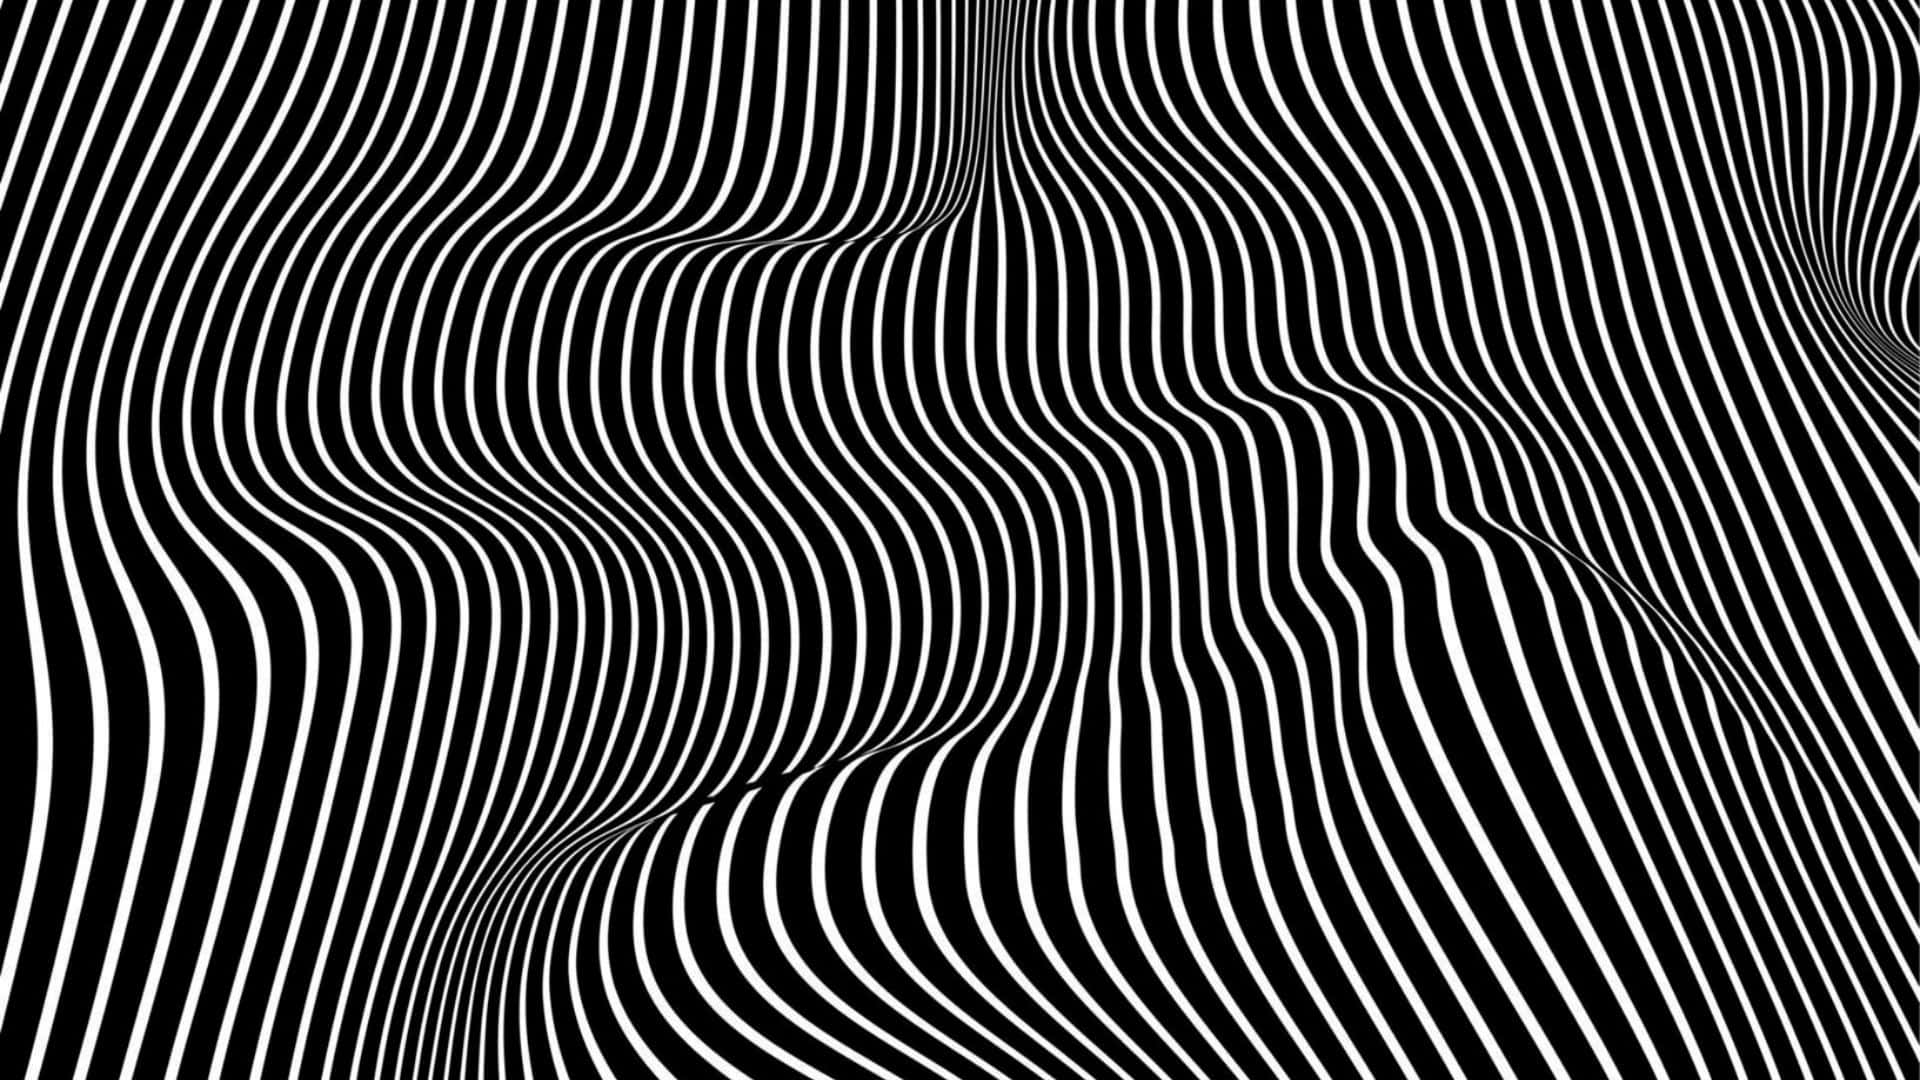 Mind-Bending Spiral Optical Illusion Wallpaper